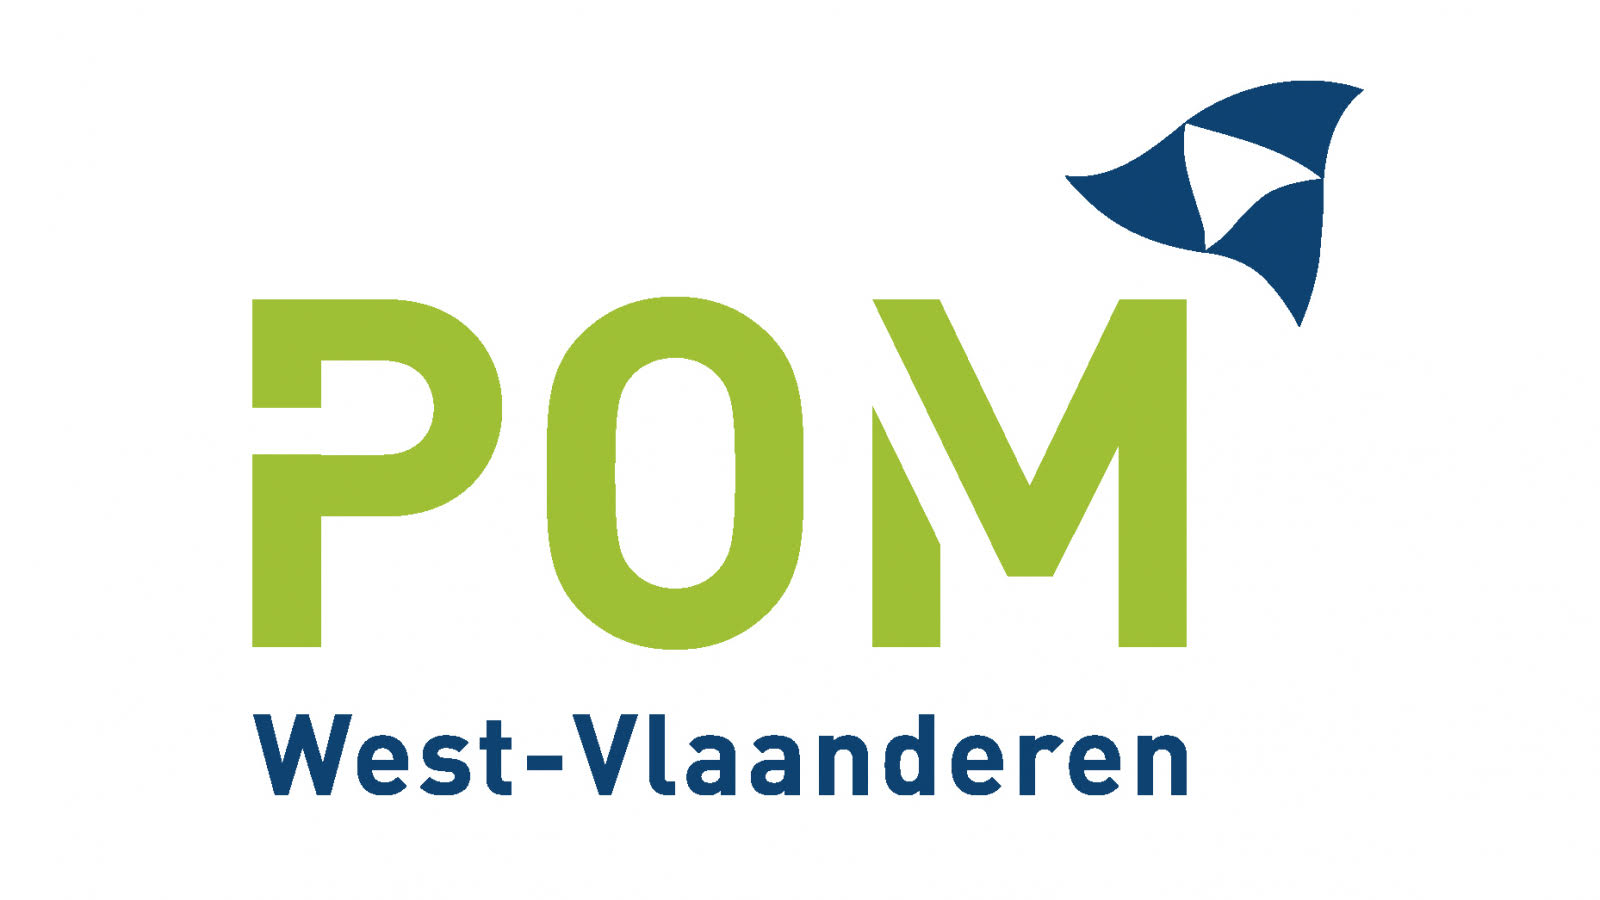 Provinciale Ontwikkelingsmaatschappij West-Vlaanderen